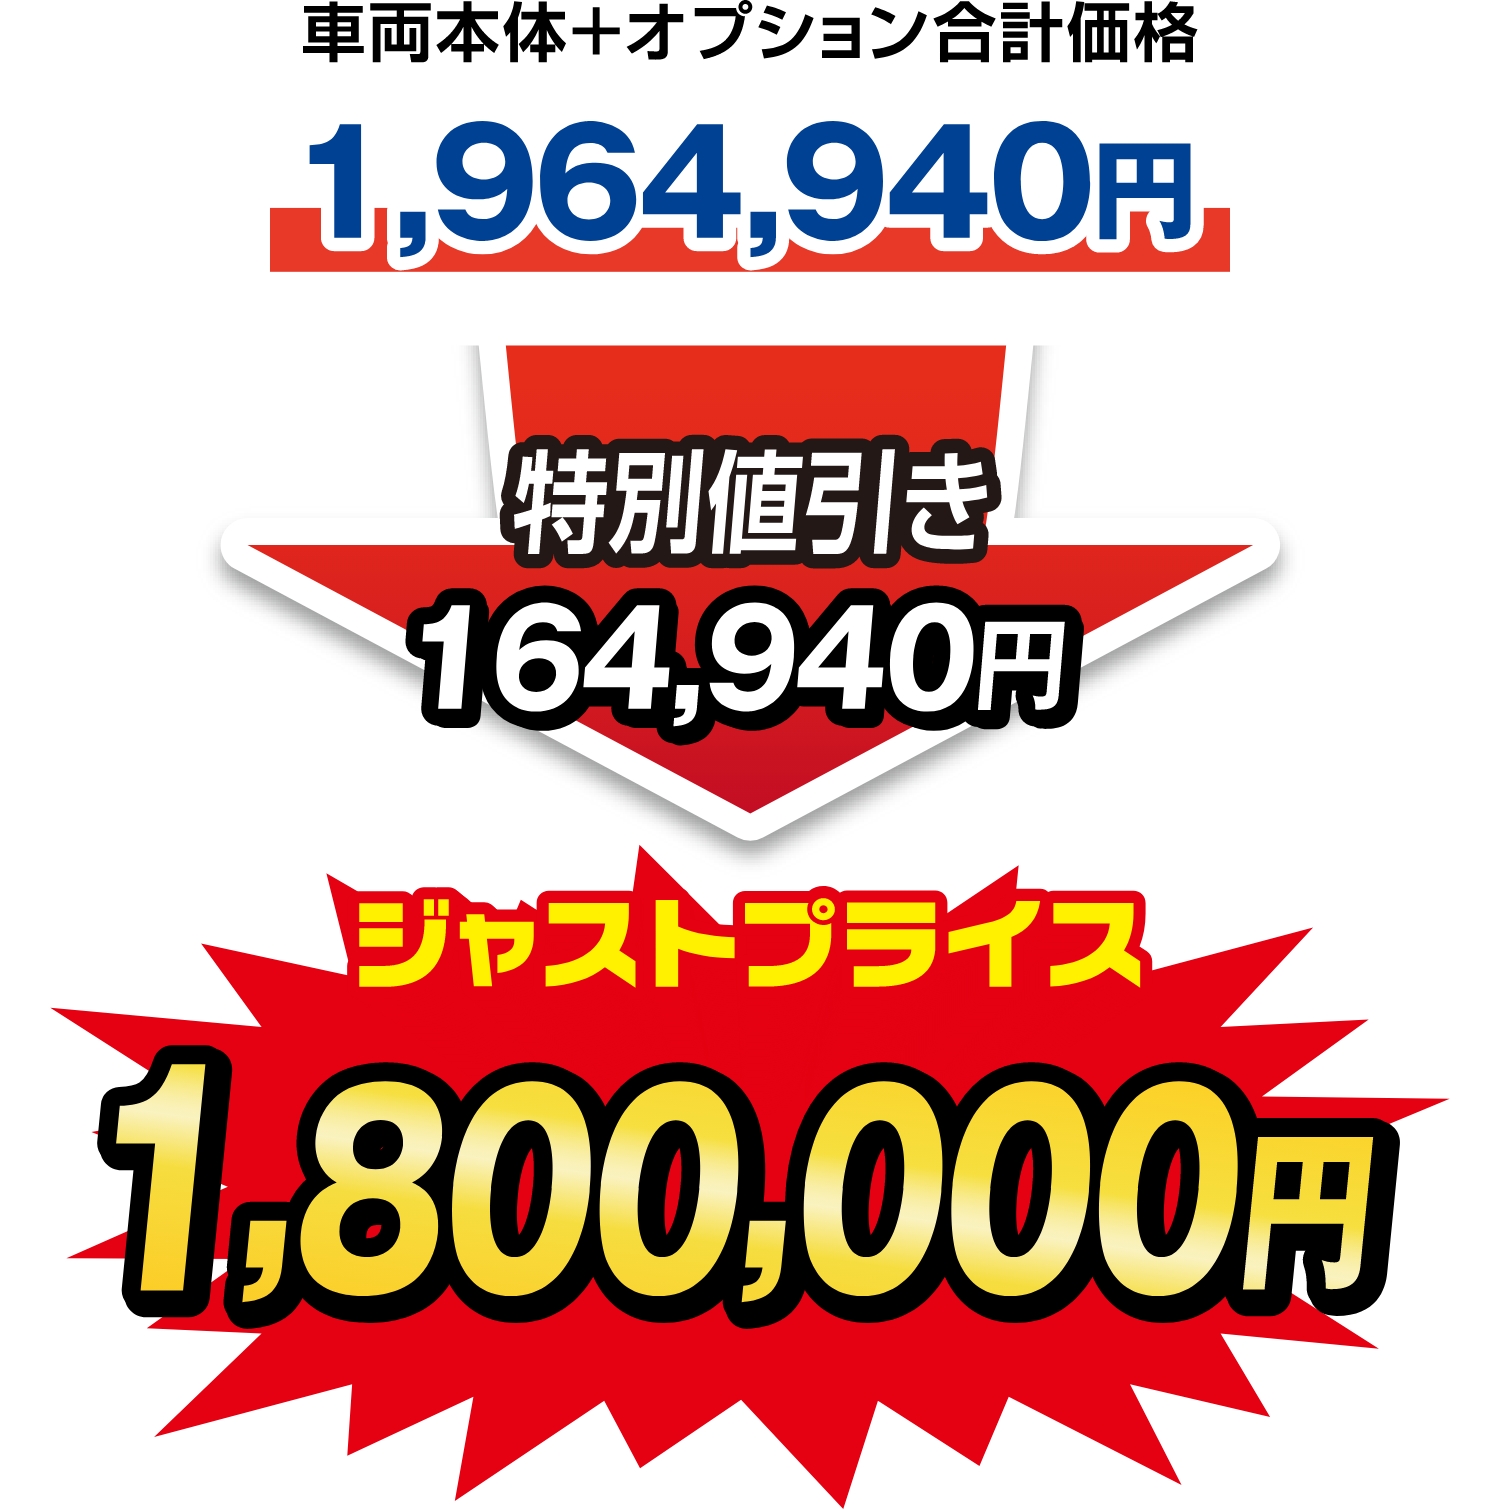 ジャストプライス1,800,000円